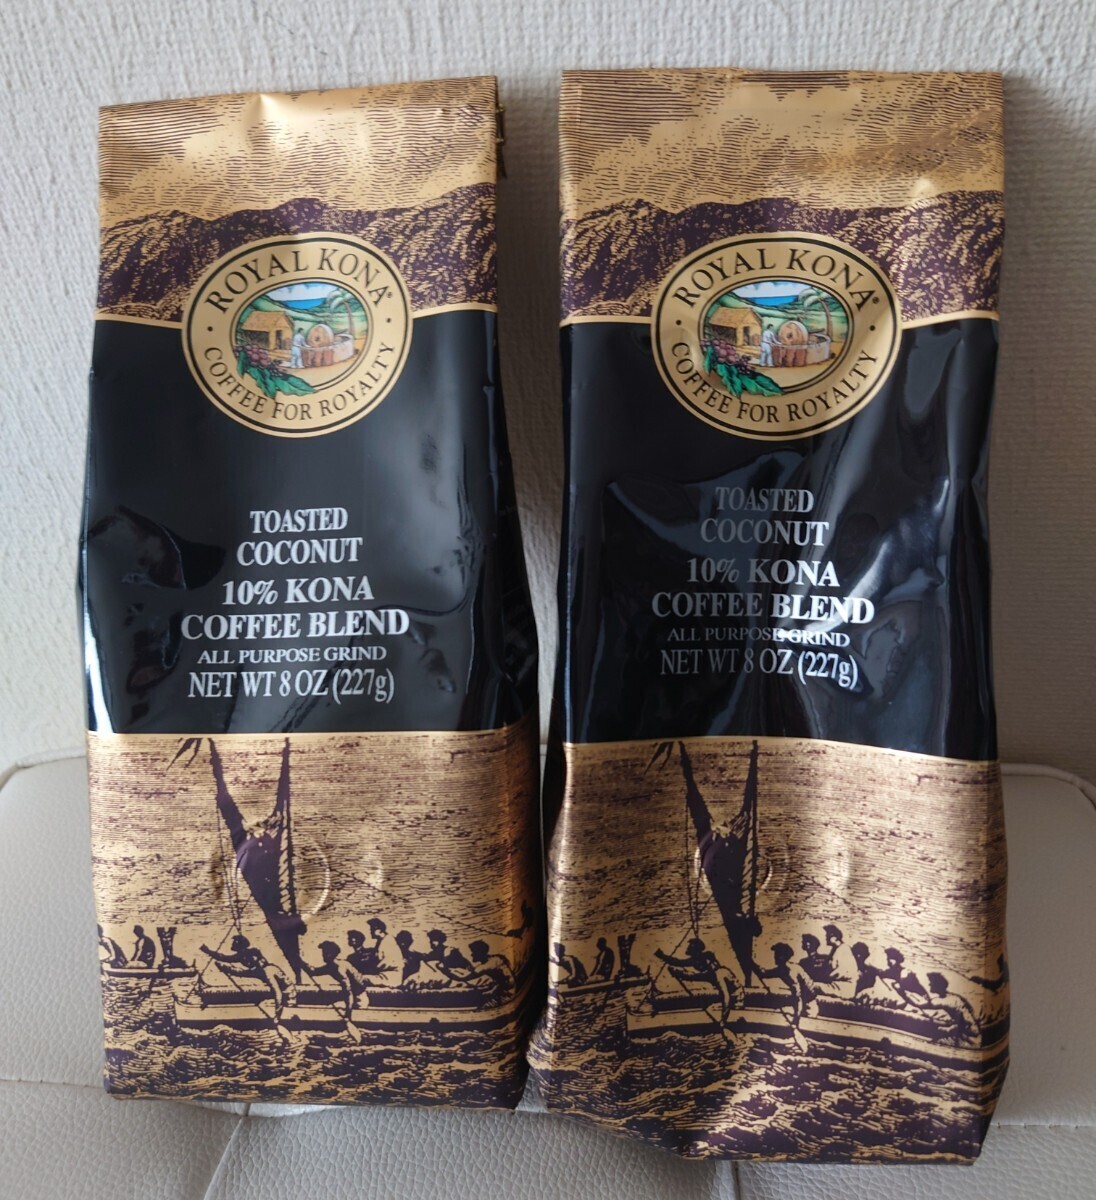 ROYAL KONA TOASTED COCONUT 10%KONA Royal kona coffee to- ste do coconut flour 8oz 227g 2 sack set 